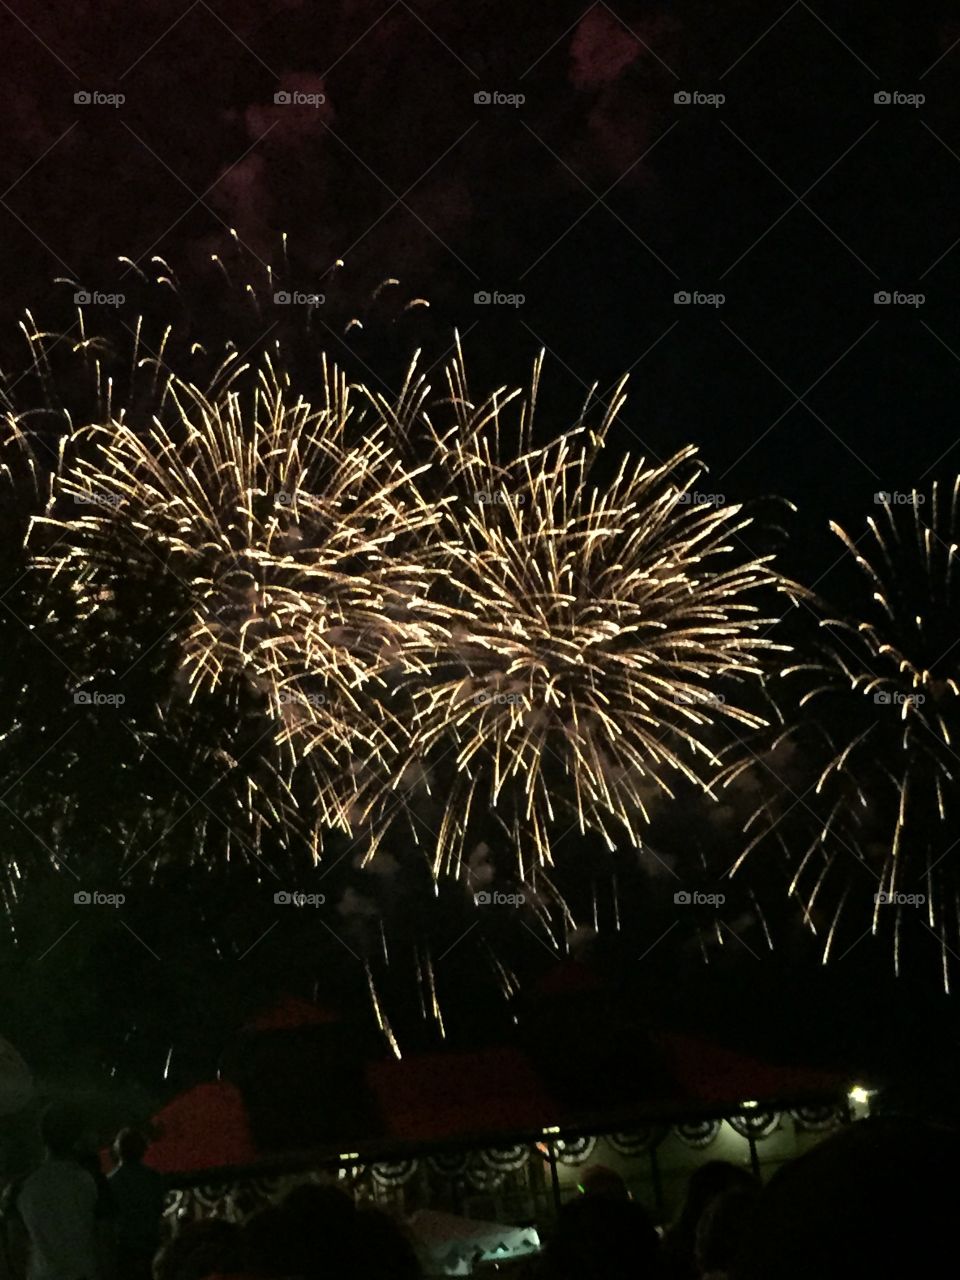 Fireworks . Taken in Burlington, VT